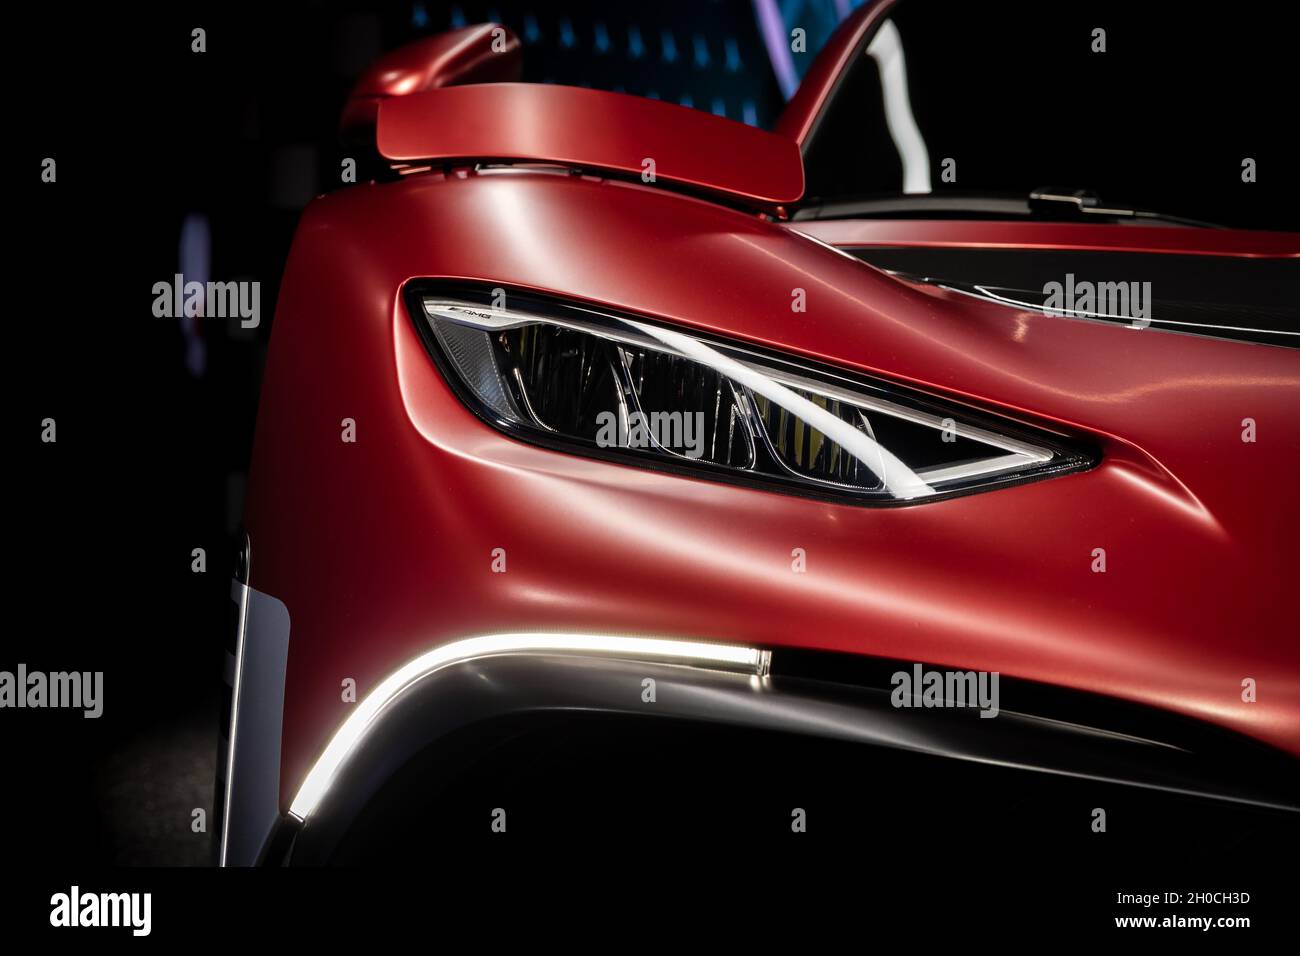 Mercedes-AMG Project One sportiva in mostra al salone IAA Mobility 2021 a Monaco di Baviera, Germania - 6 settembre 2021. Foto Stock